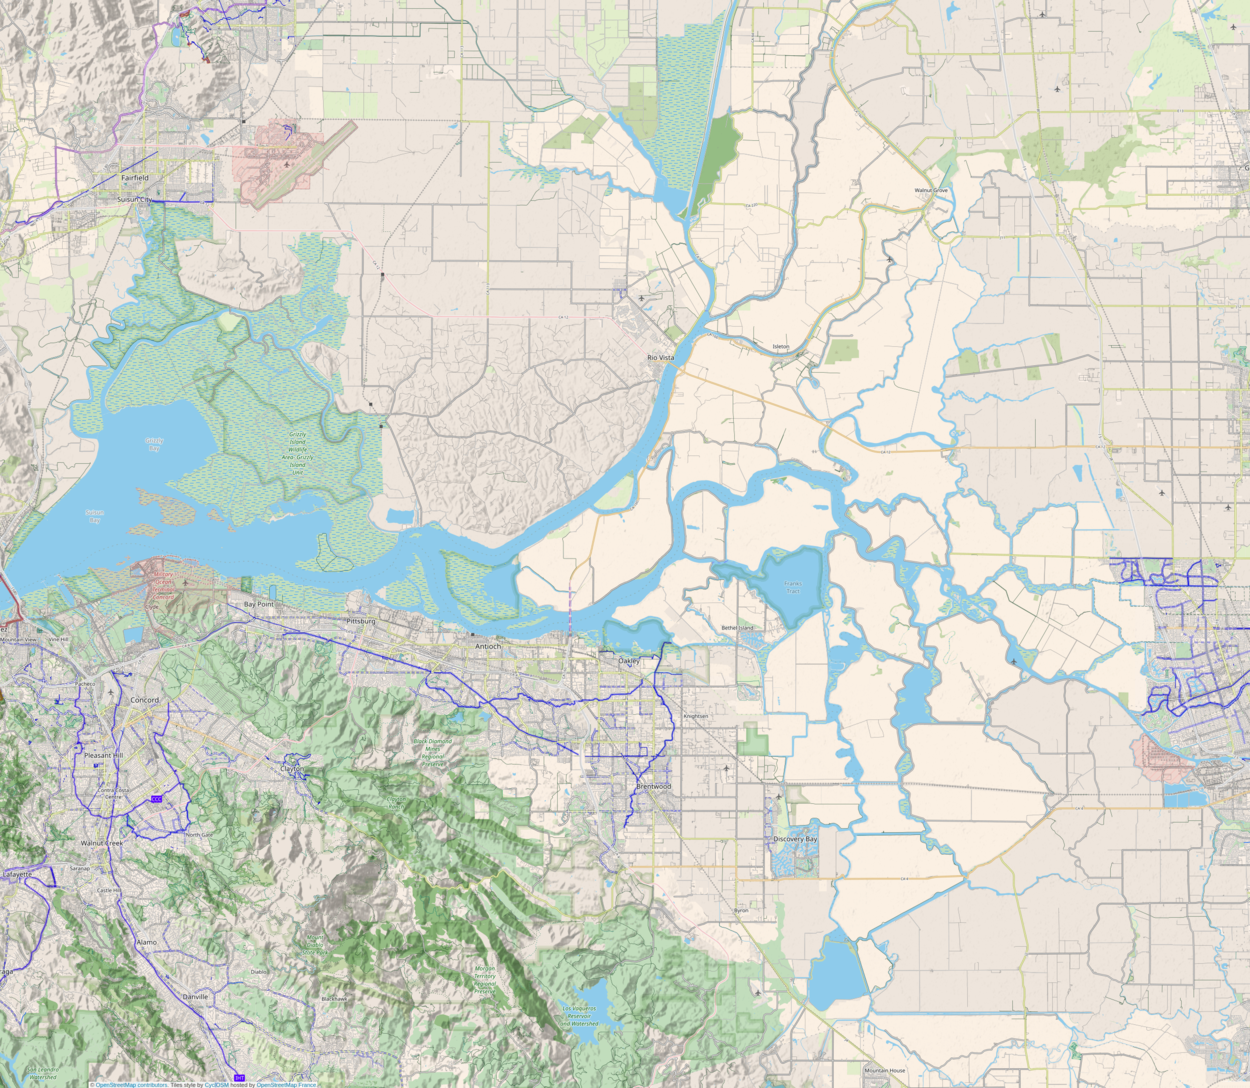 Shin Kee Tract is located in Sacramento-San Joaquin River Delta